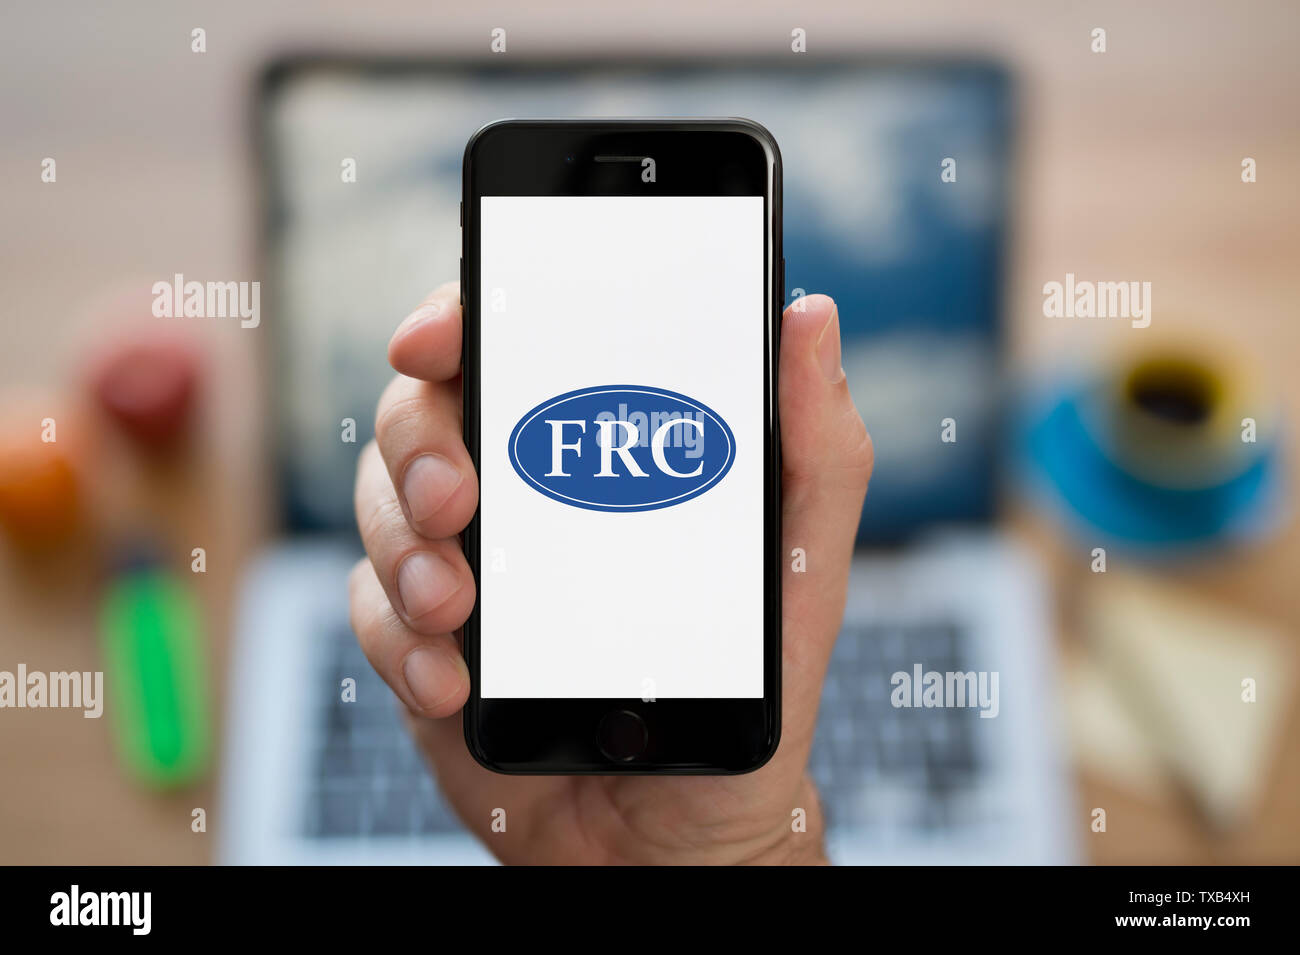 Un homme se penche sur son iPhone qui affiche le Financial Reporting Council (FRC) logo (usage éditorial uniquement). Banque D'Images